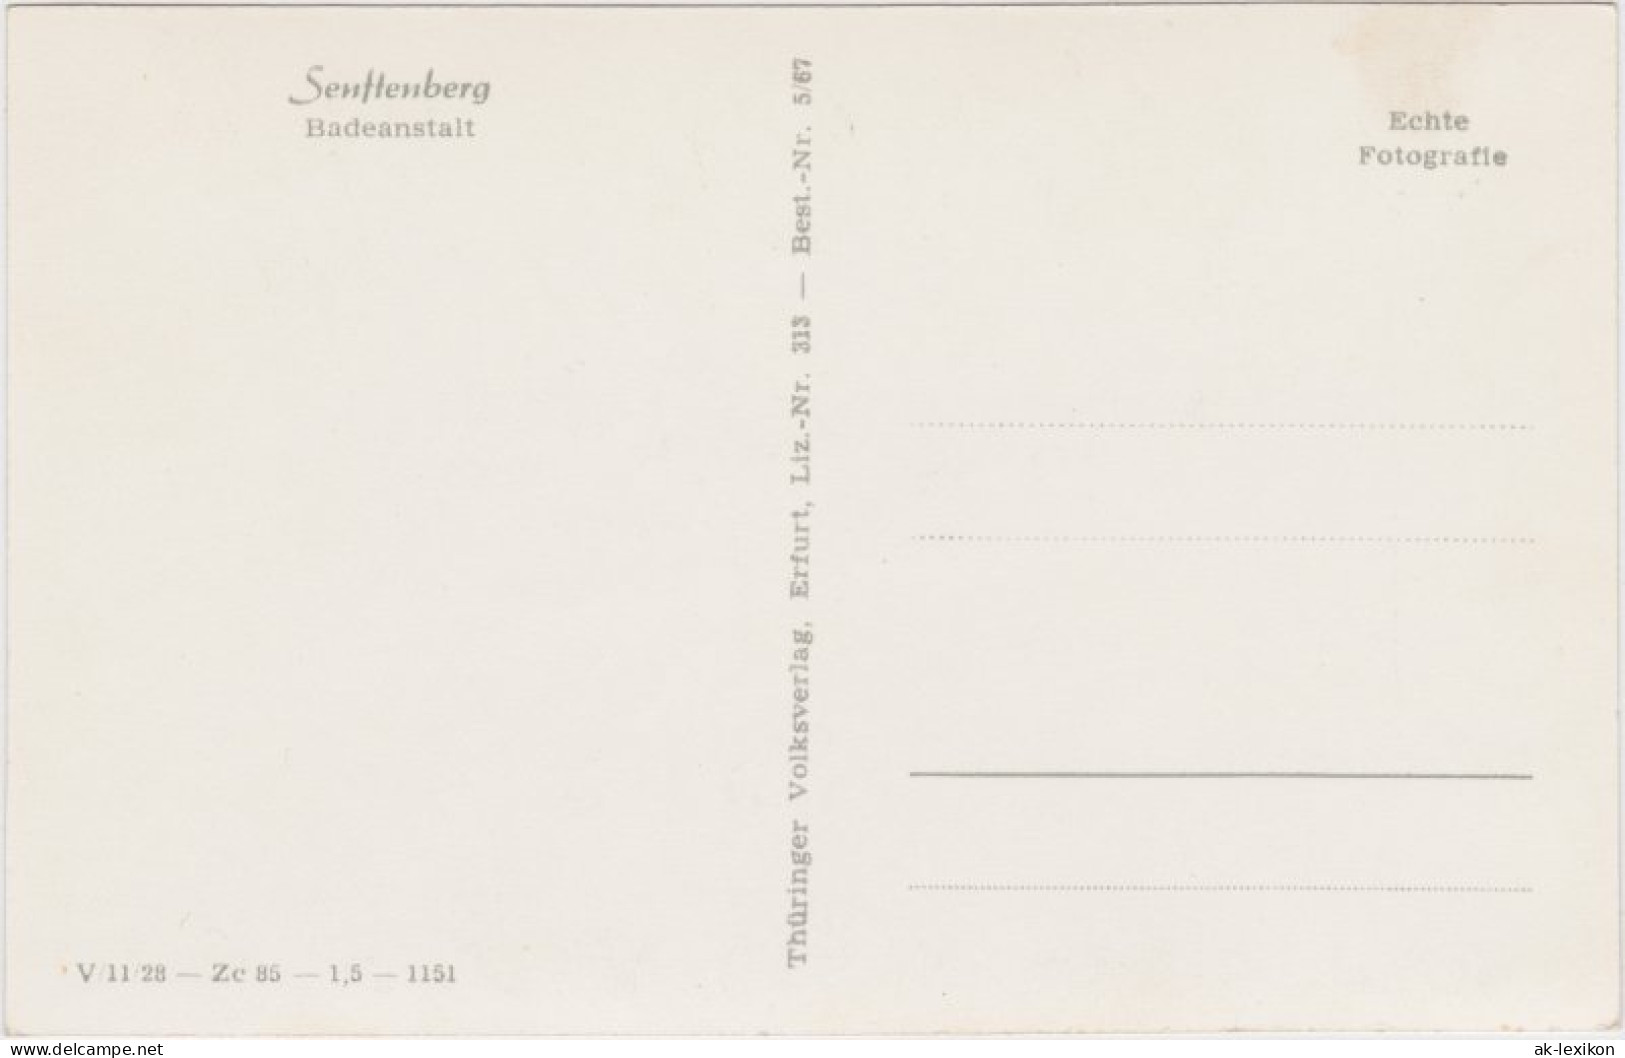 Ansichtskarte Senftenberg (Niederlausitz) Badeanstalt Mit Sprungturm 1953 - Senftenberg